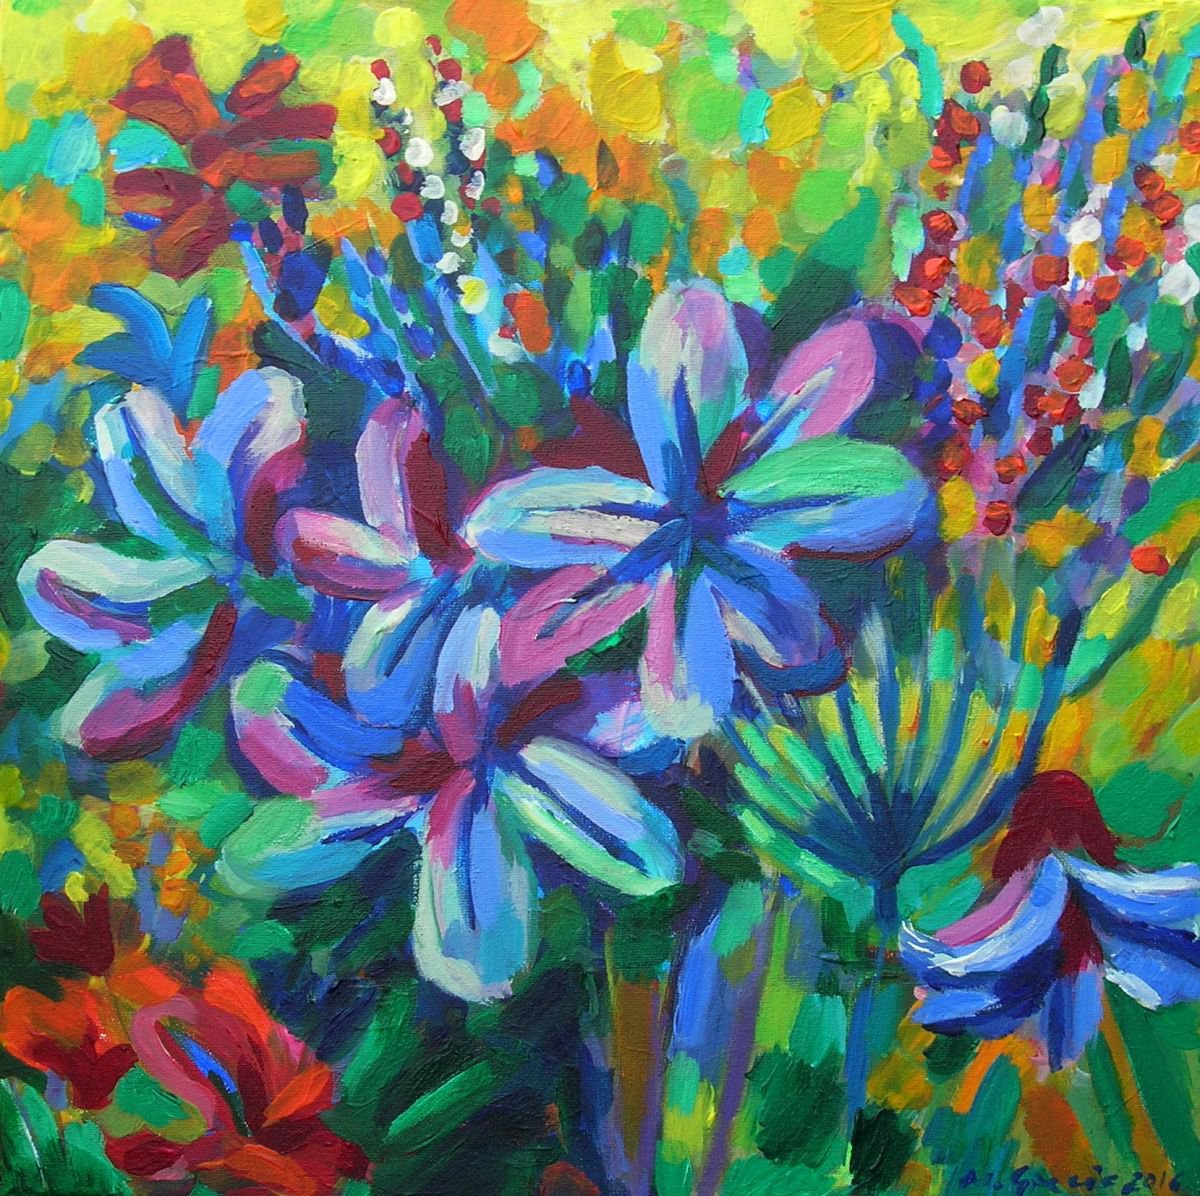 Joyful meadow flowers by Maja Grecic